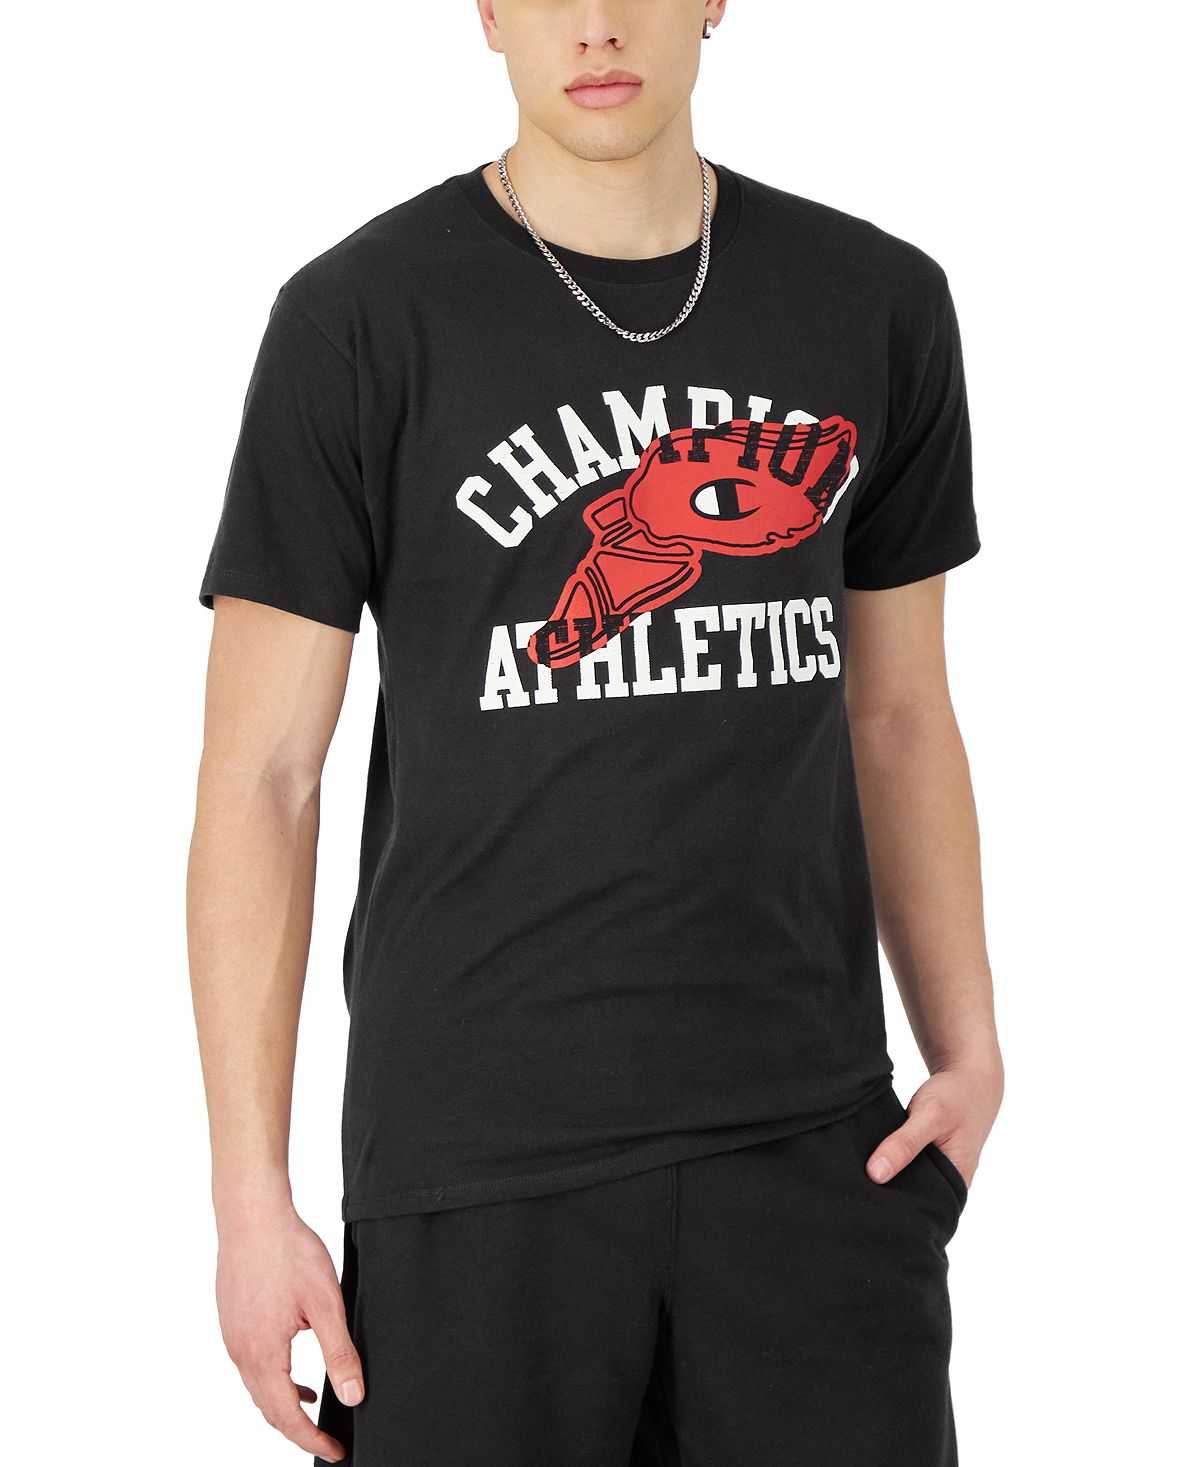 мужская классическая футболка с графическим логотипом marvel Мужская классическая футболка с графическим логотипом Champion